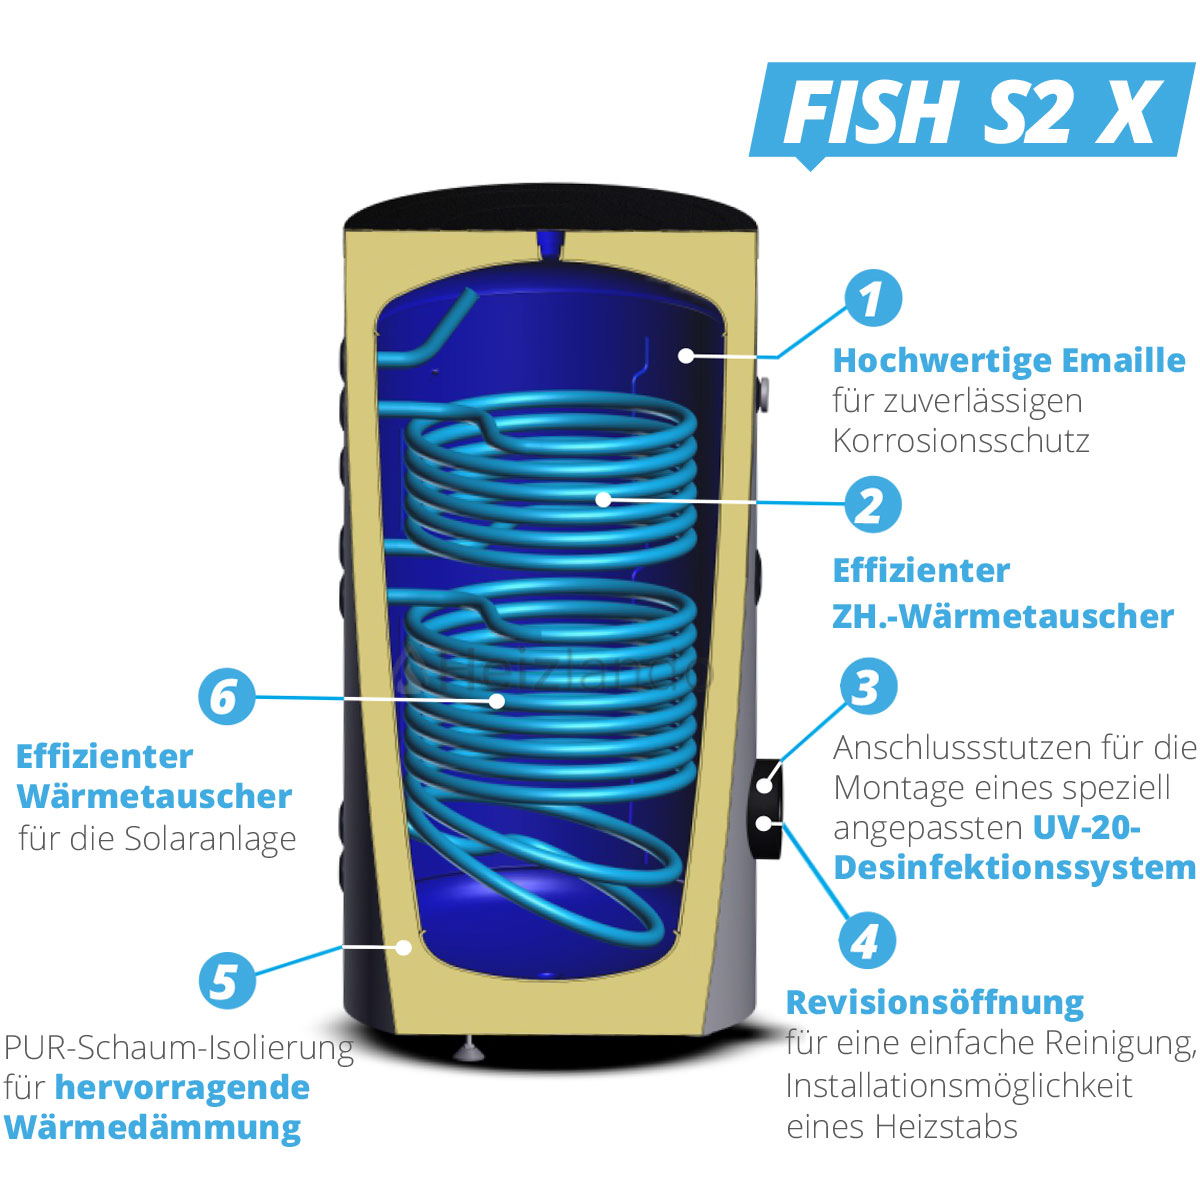 Sunex Warmwasser- und Solarspeicher Fish S2 mit 2 Wärmetauschern 300 Liter